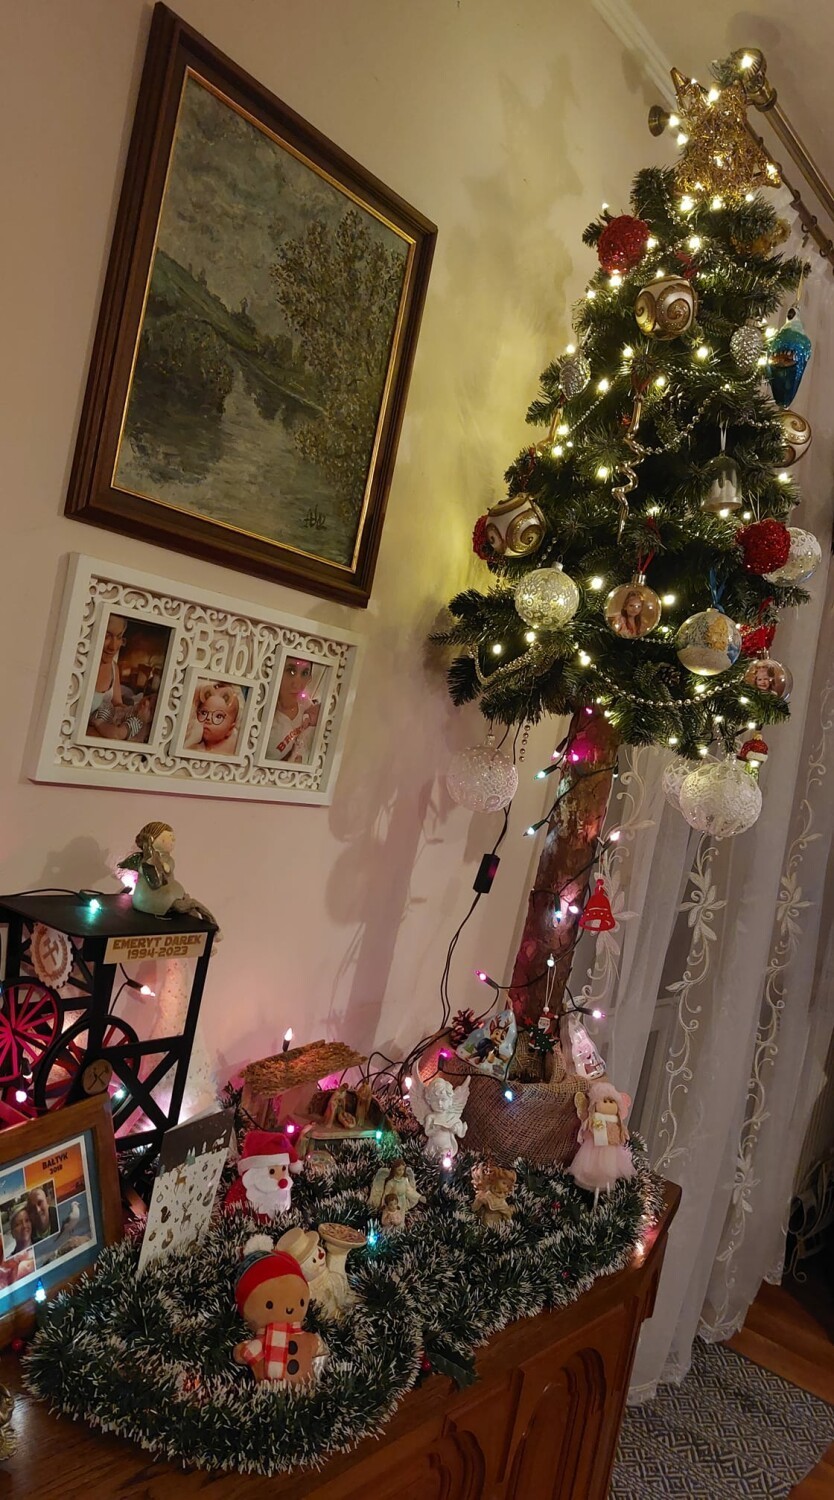 Oto najpiękniejsze choinki w Rybniku - zobacz zdjęcia! Takie świąteczne cuda mają w domach nasi czytelnicy